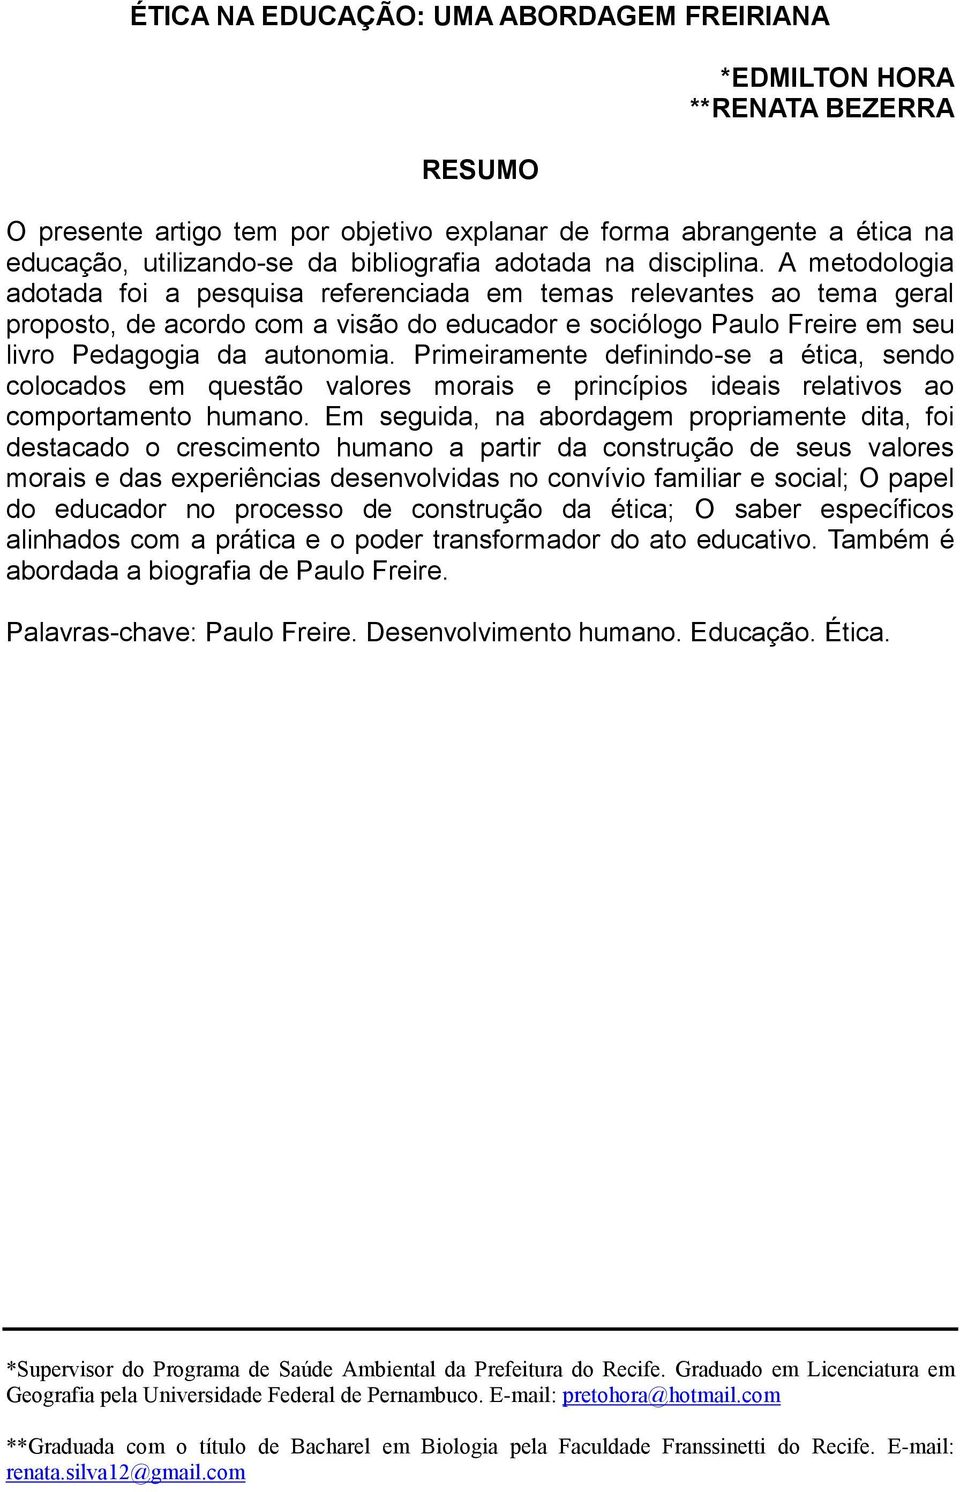 A metodologia adotada foi a pesquisa referenciada em temas relevantes ao tema geral proposto, de acordo com a visão do educador e sociólogo Paulo Freire em seu livro Pedagogia da autonomia.